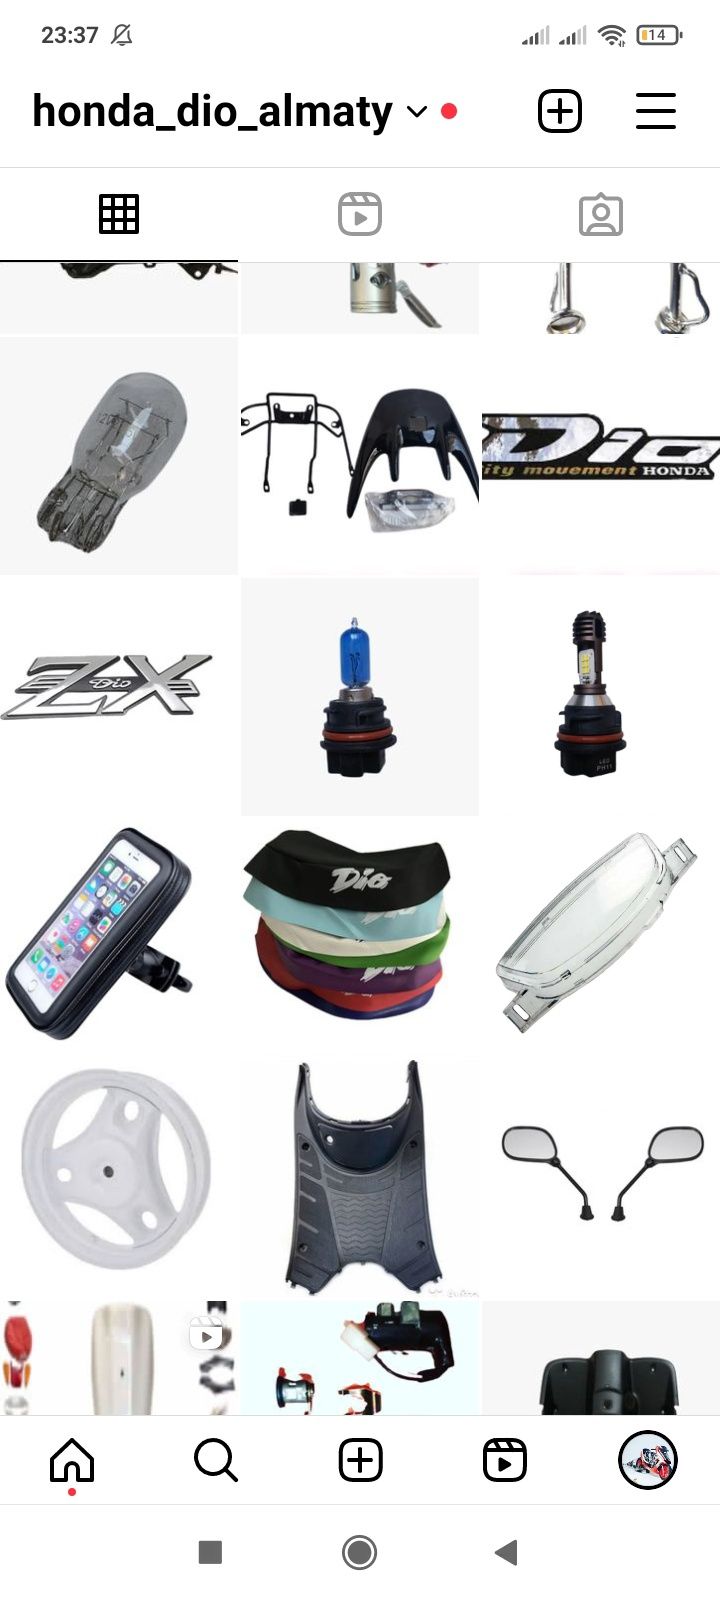 Диск,резина, honda dio,хонда дио,мотозапчасти,мопед,скутер,колесо